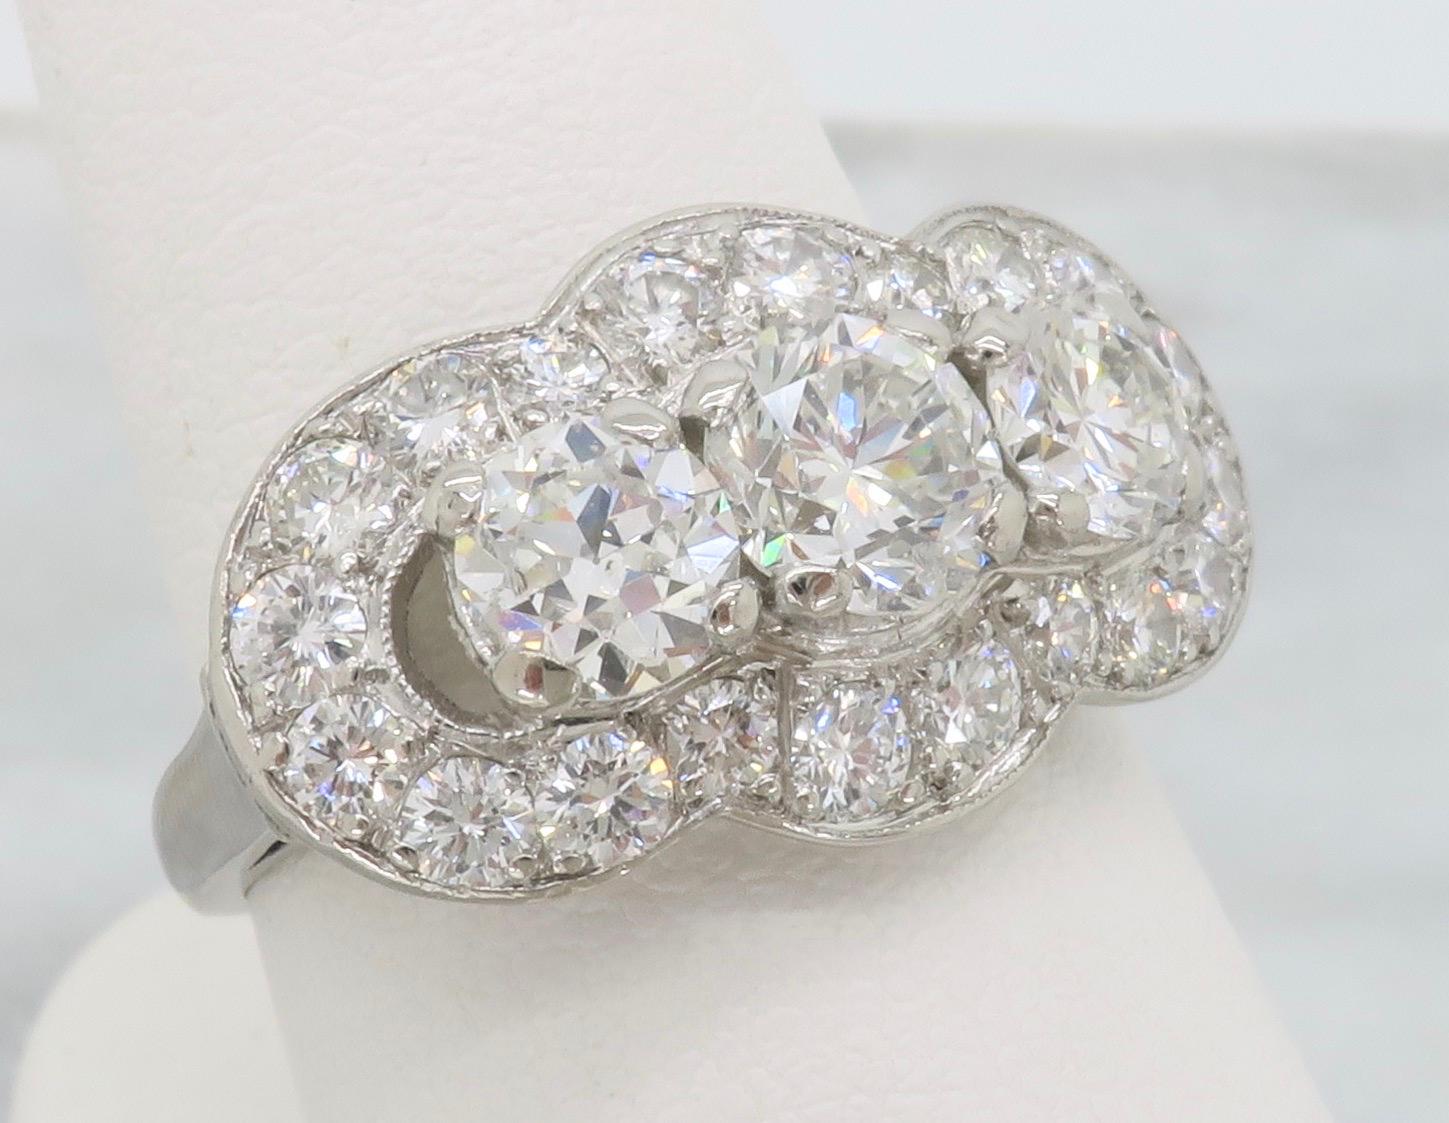 3 stone halo diamond ring